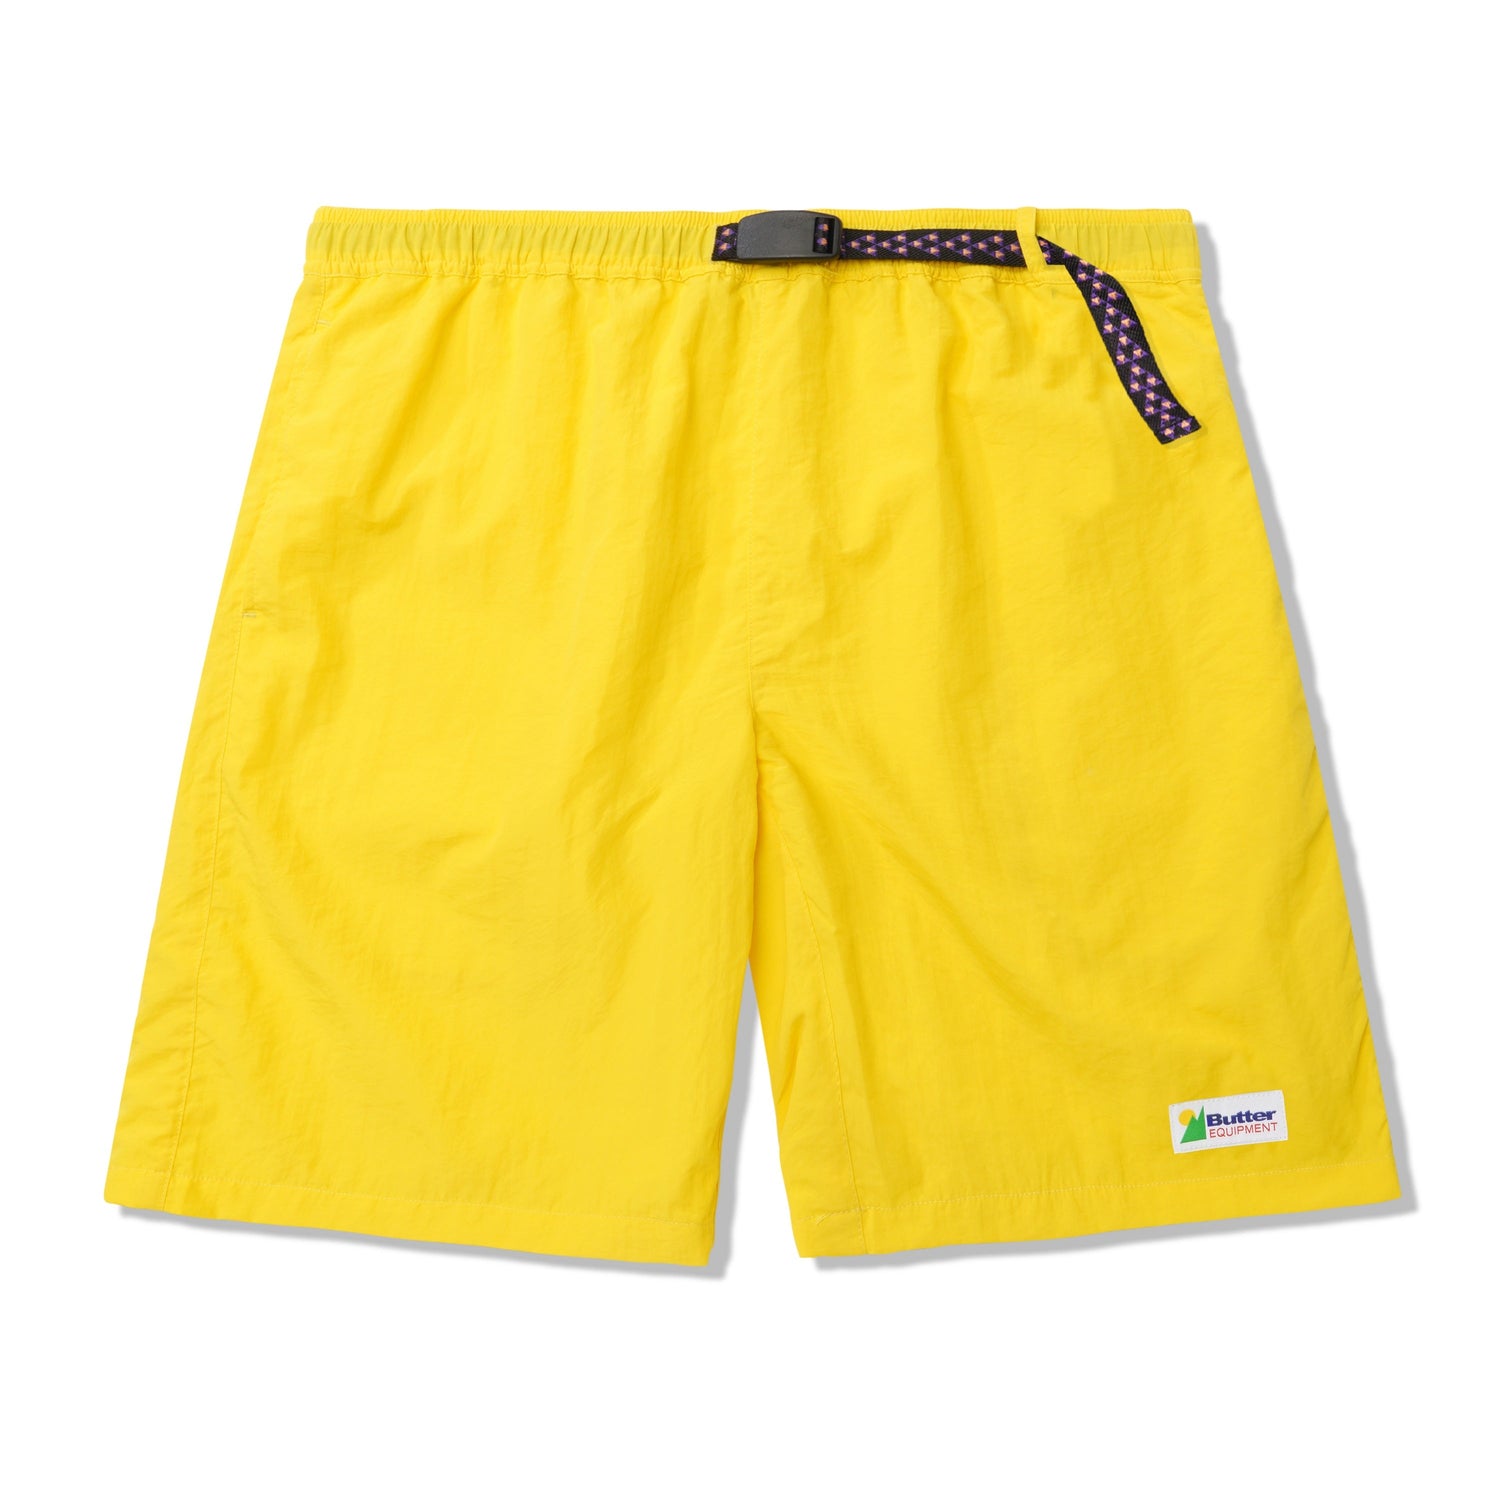 Equipment Shorts, Yellow